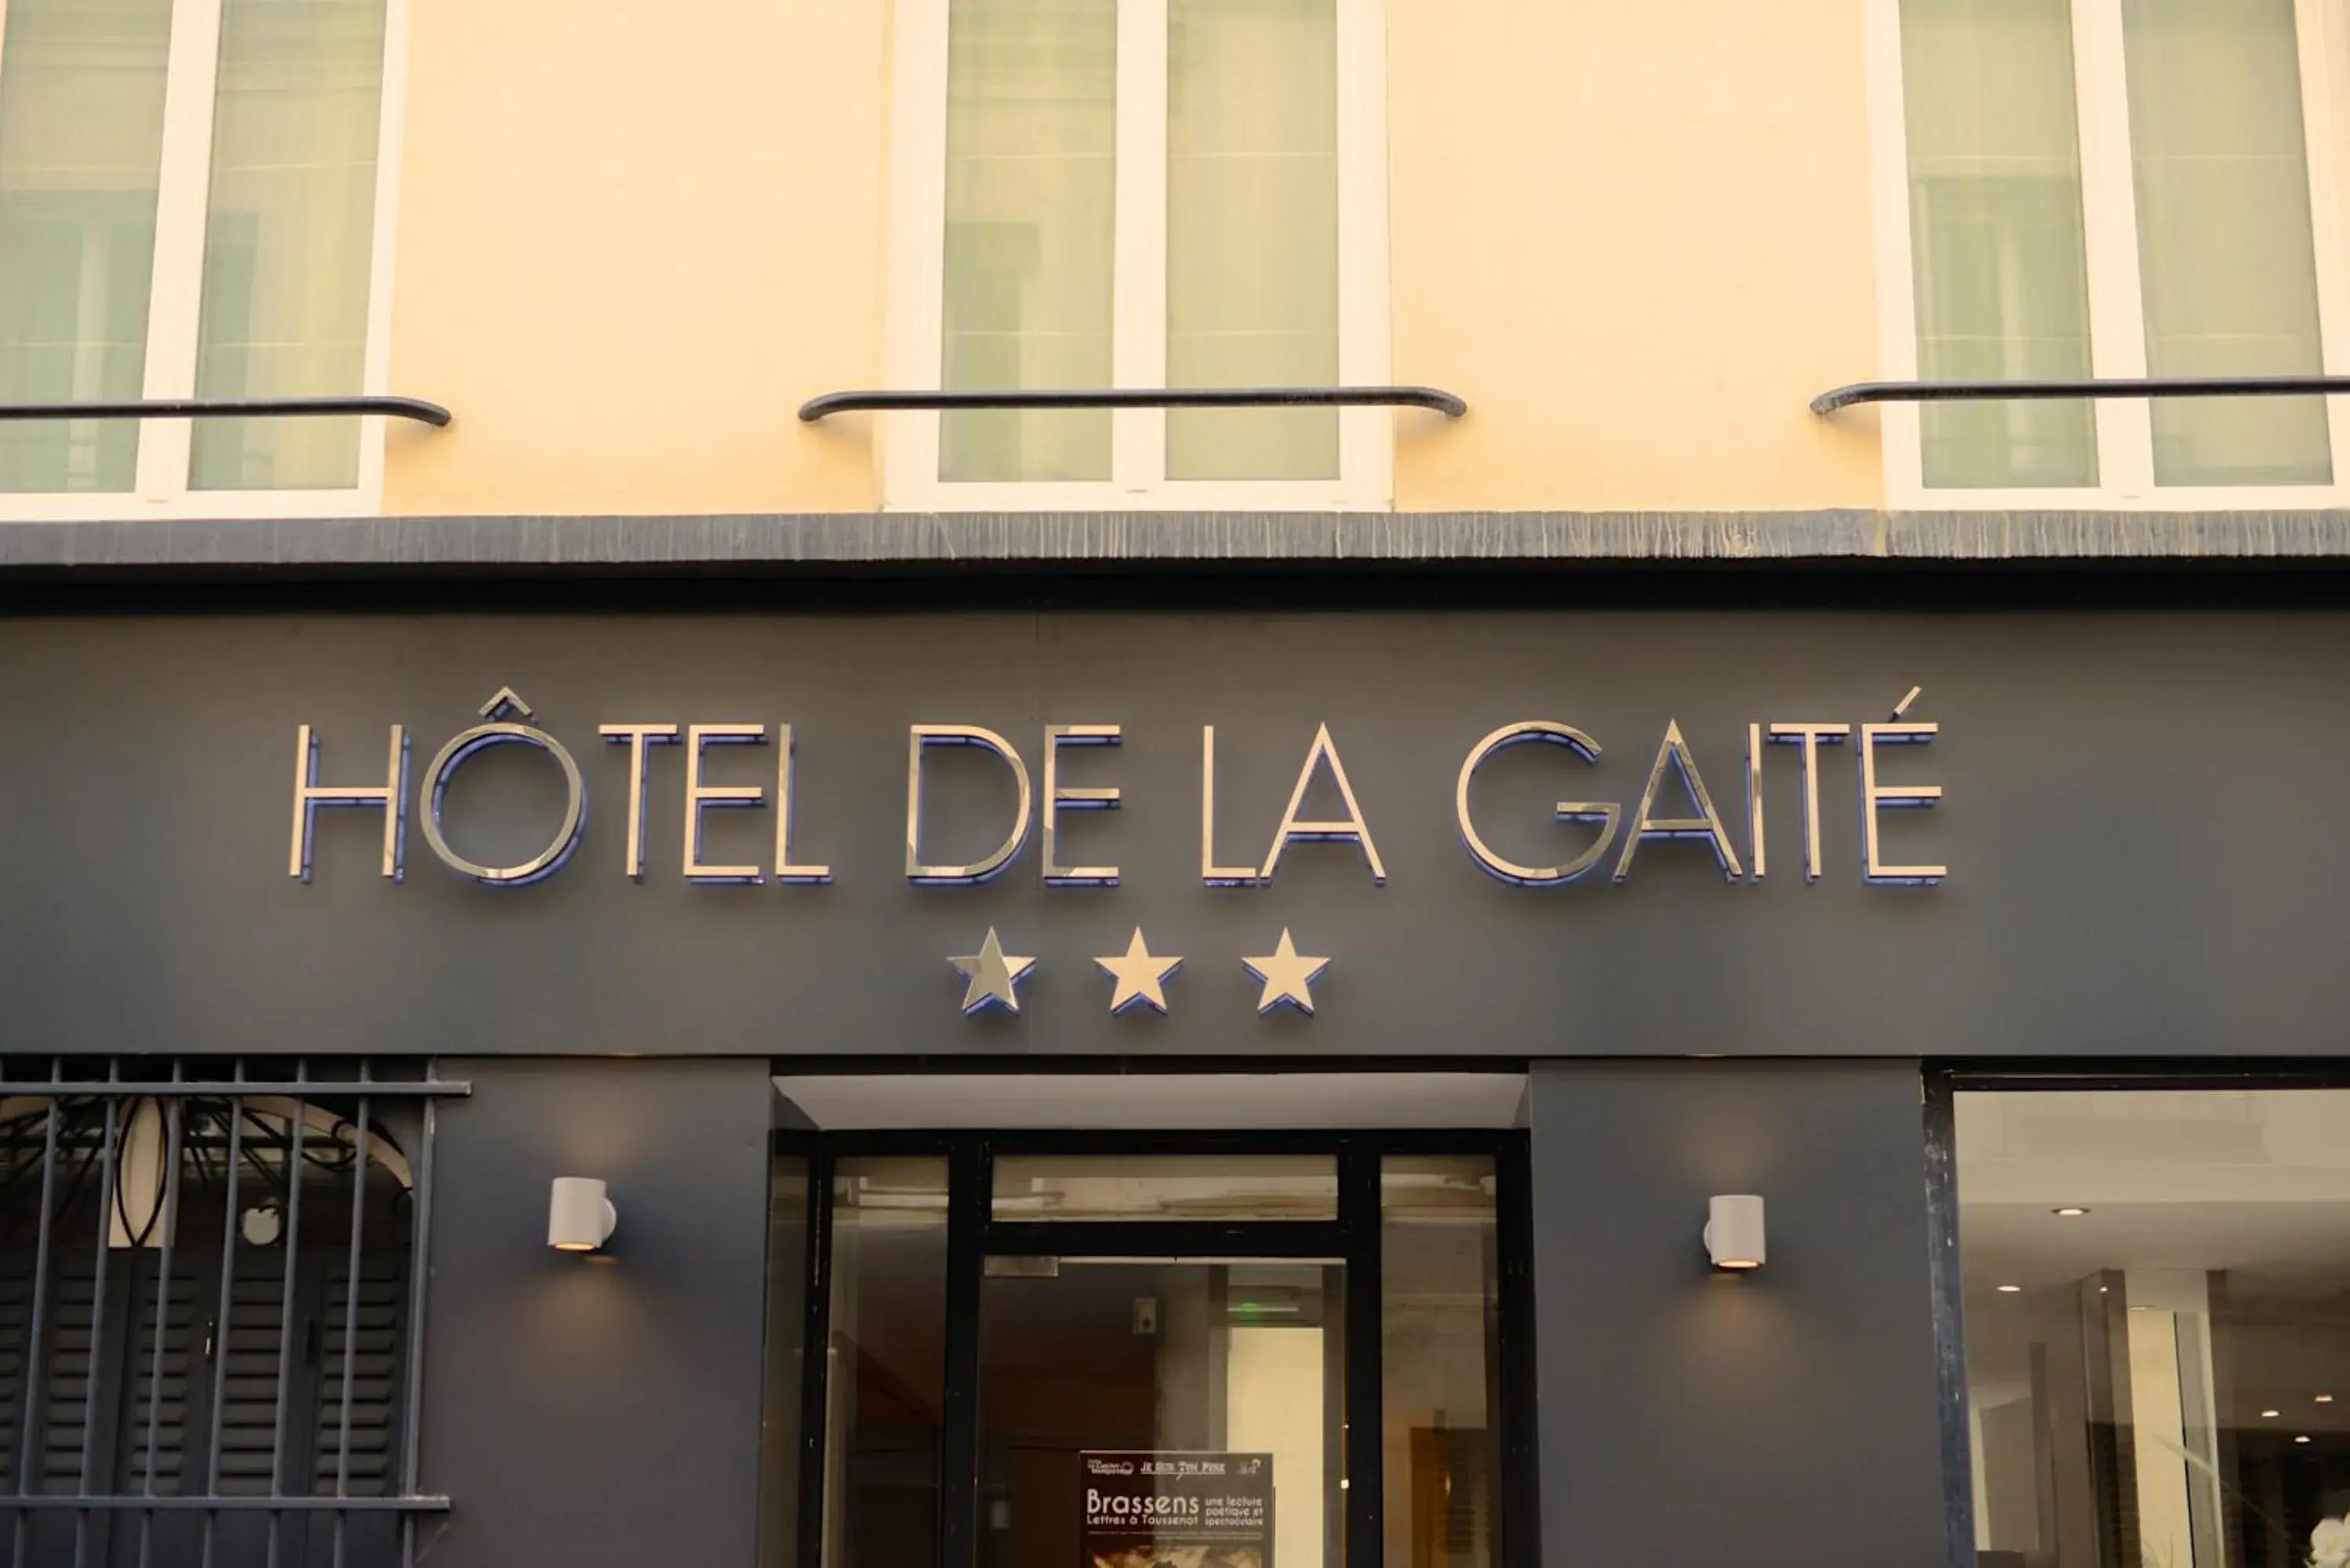 Facade/entrance in Hôtel de la Gaîté